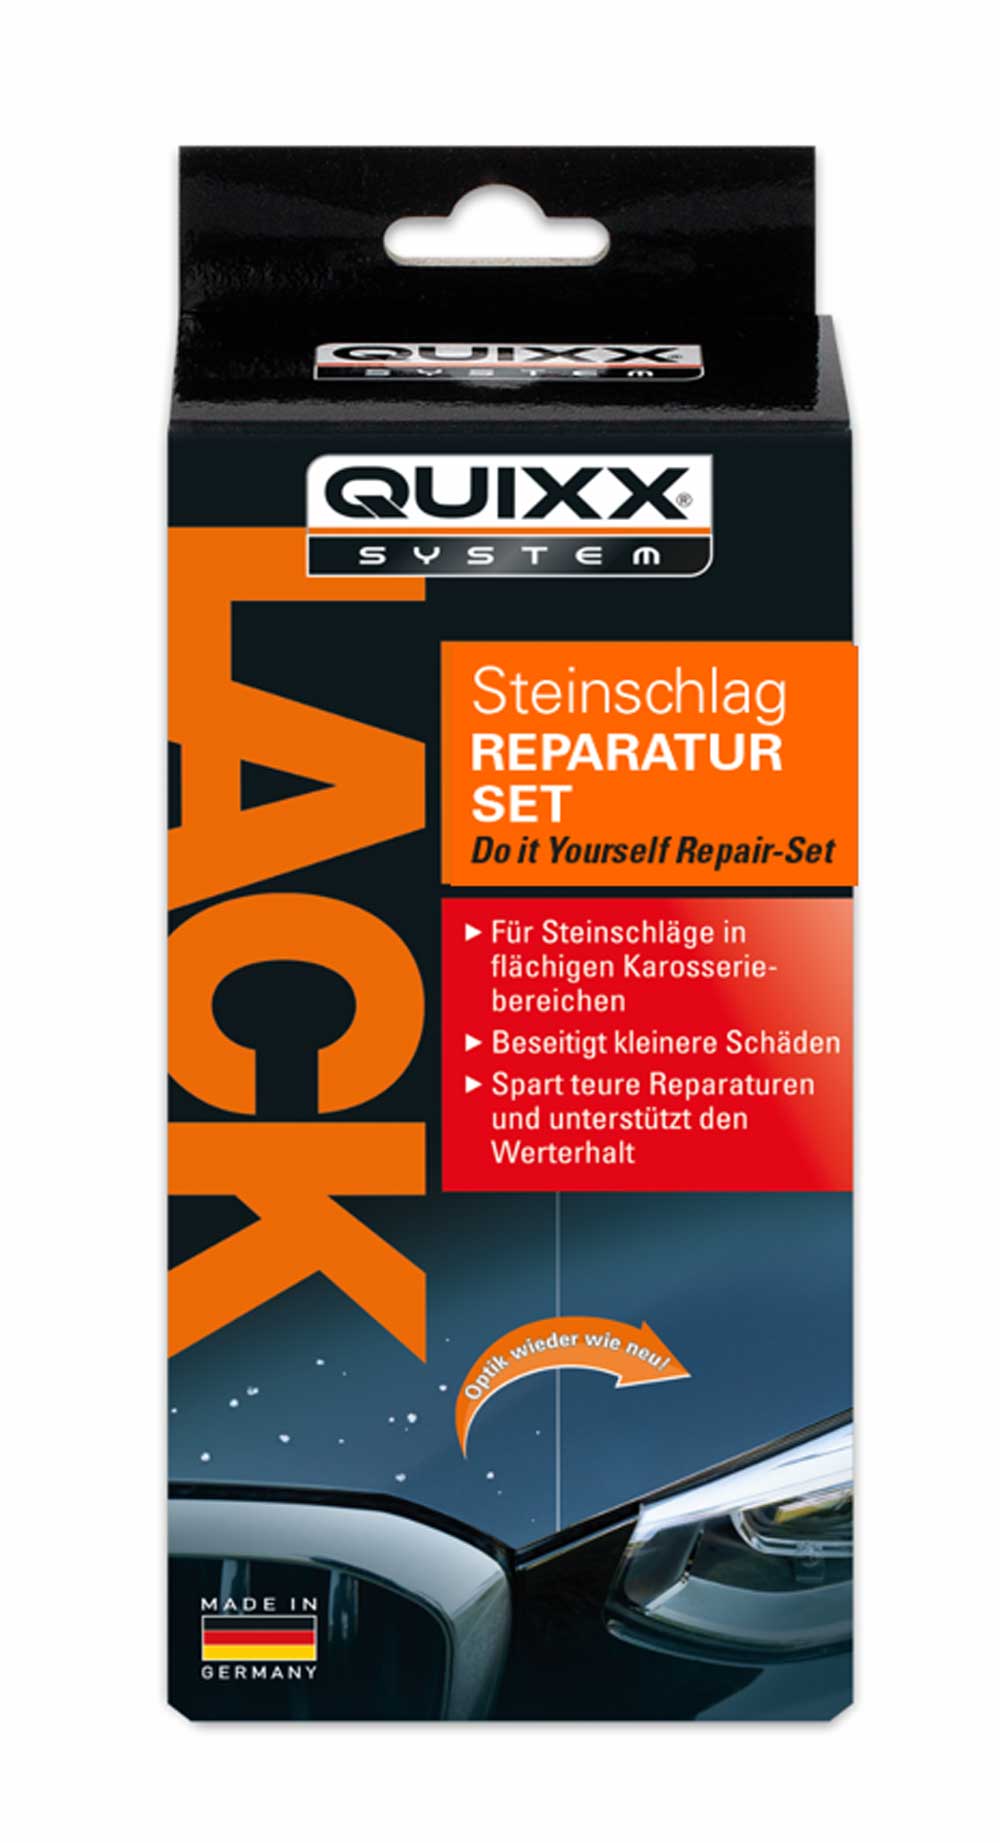 Quixx Steinschlag Reparatur-Set Universal